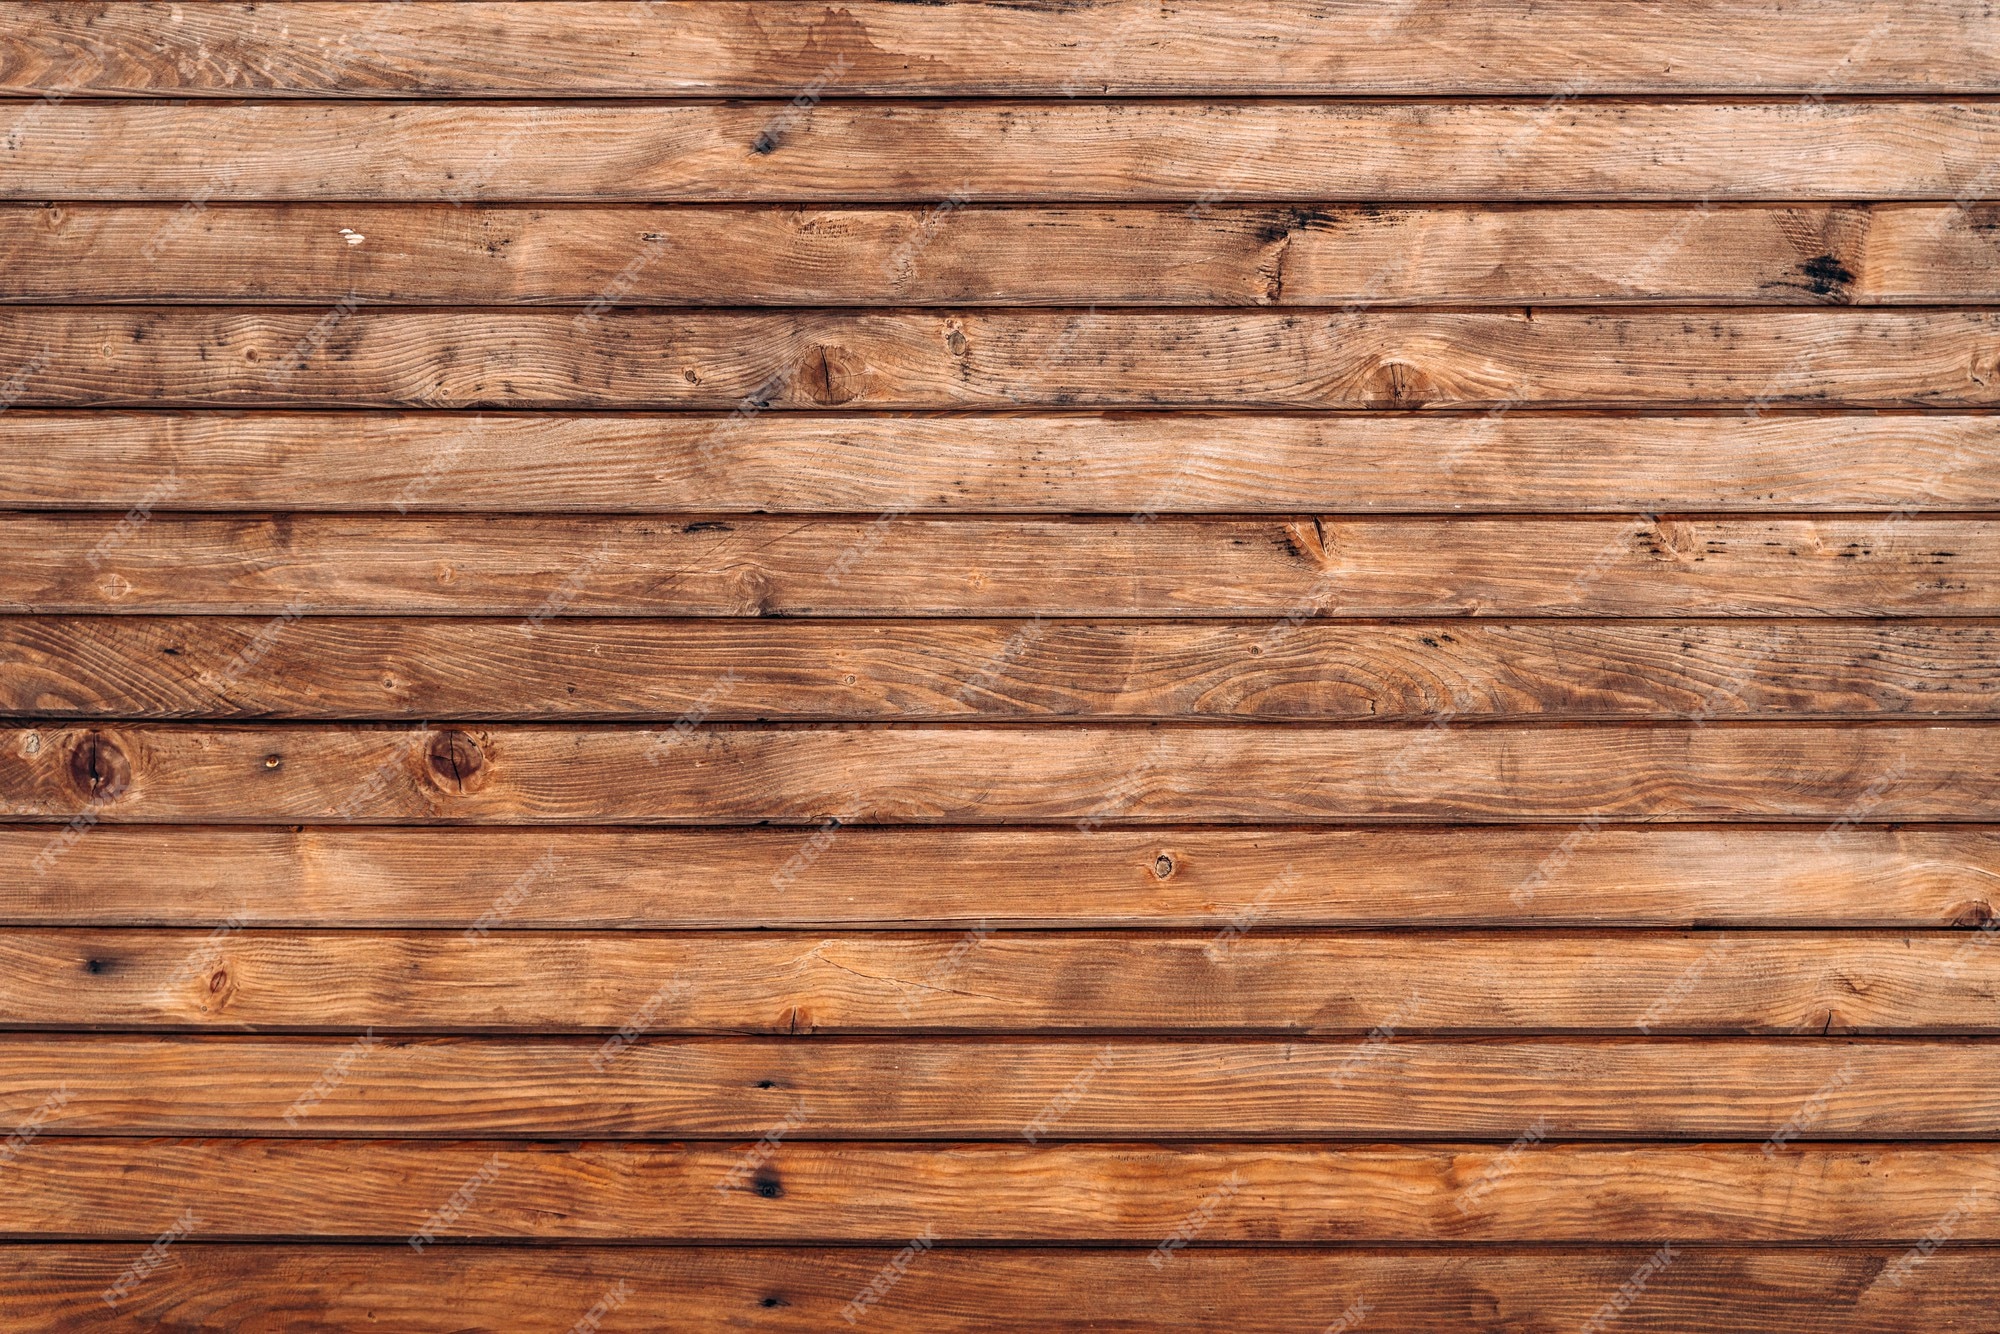 Tấm ván gỗ tái chế đang là xu hướng trang trí nội thất hot nhất hiện nay. Nếu bạn đang tìm kiếm ý tưởng trang trí tường mới, hãy xem bộ sưu tập hình ảnh về tấm ván gỗ tái chế trang trí tường này. Bạn sẽ được khám phá ra nhiều cách sáng tạo mới.